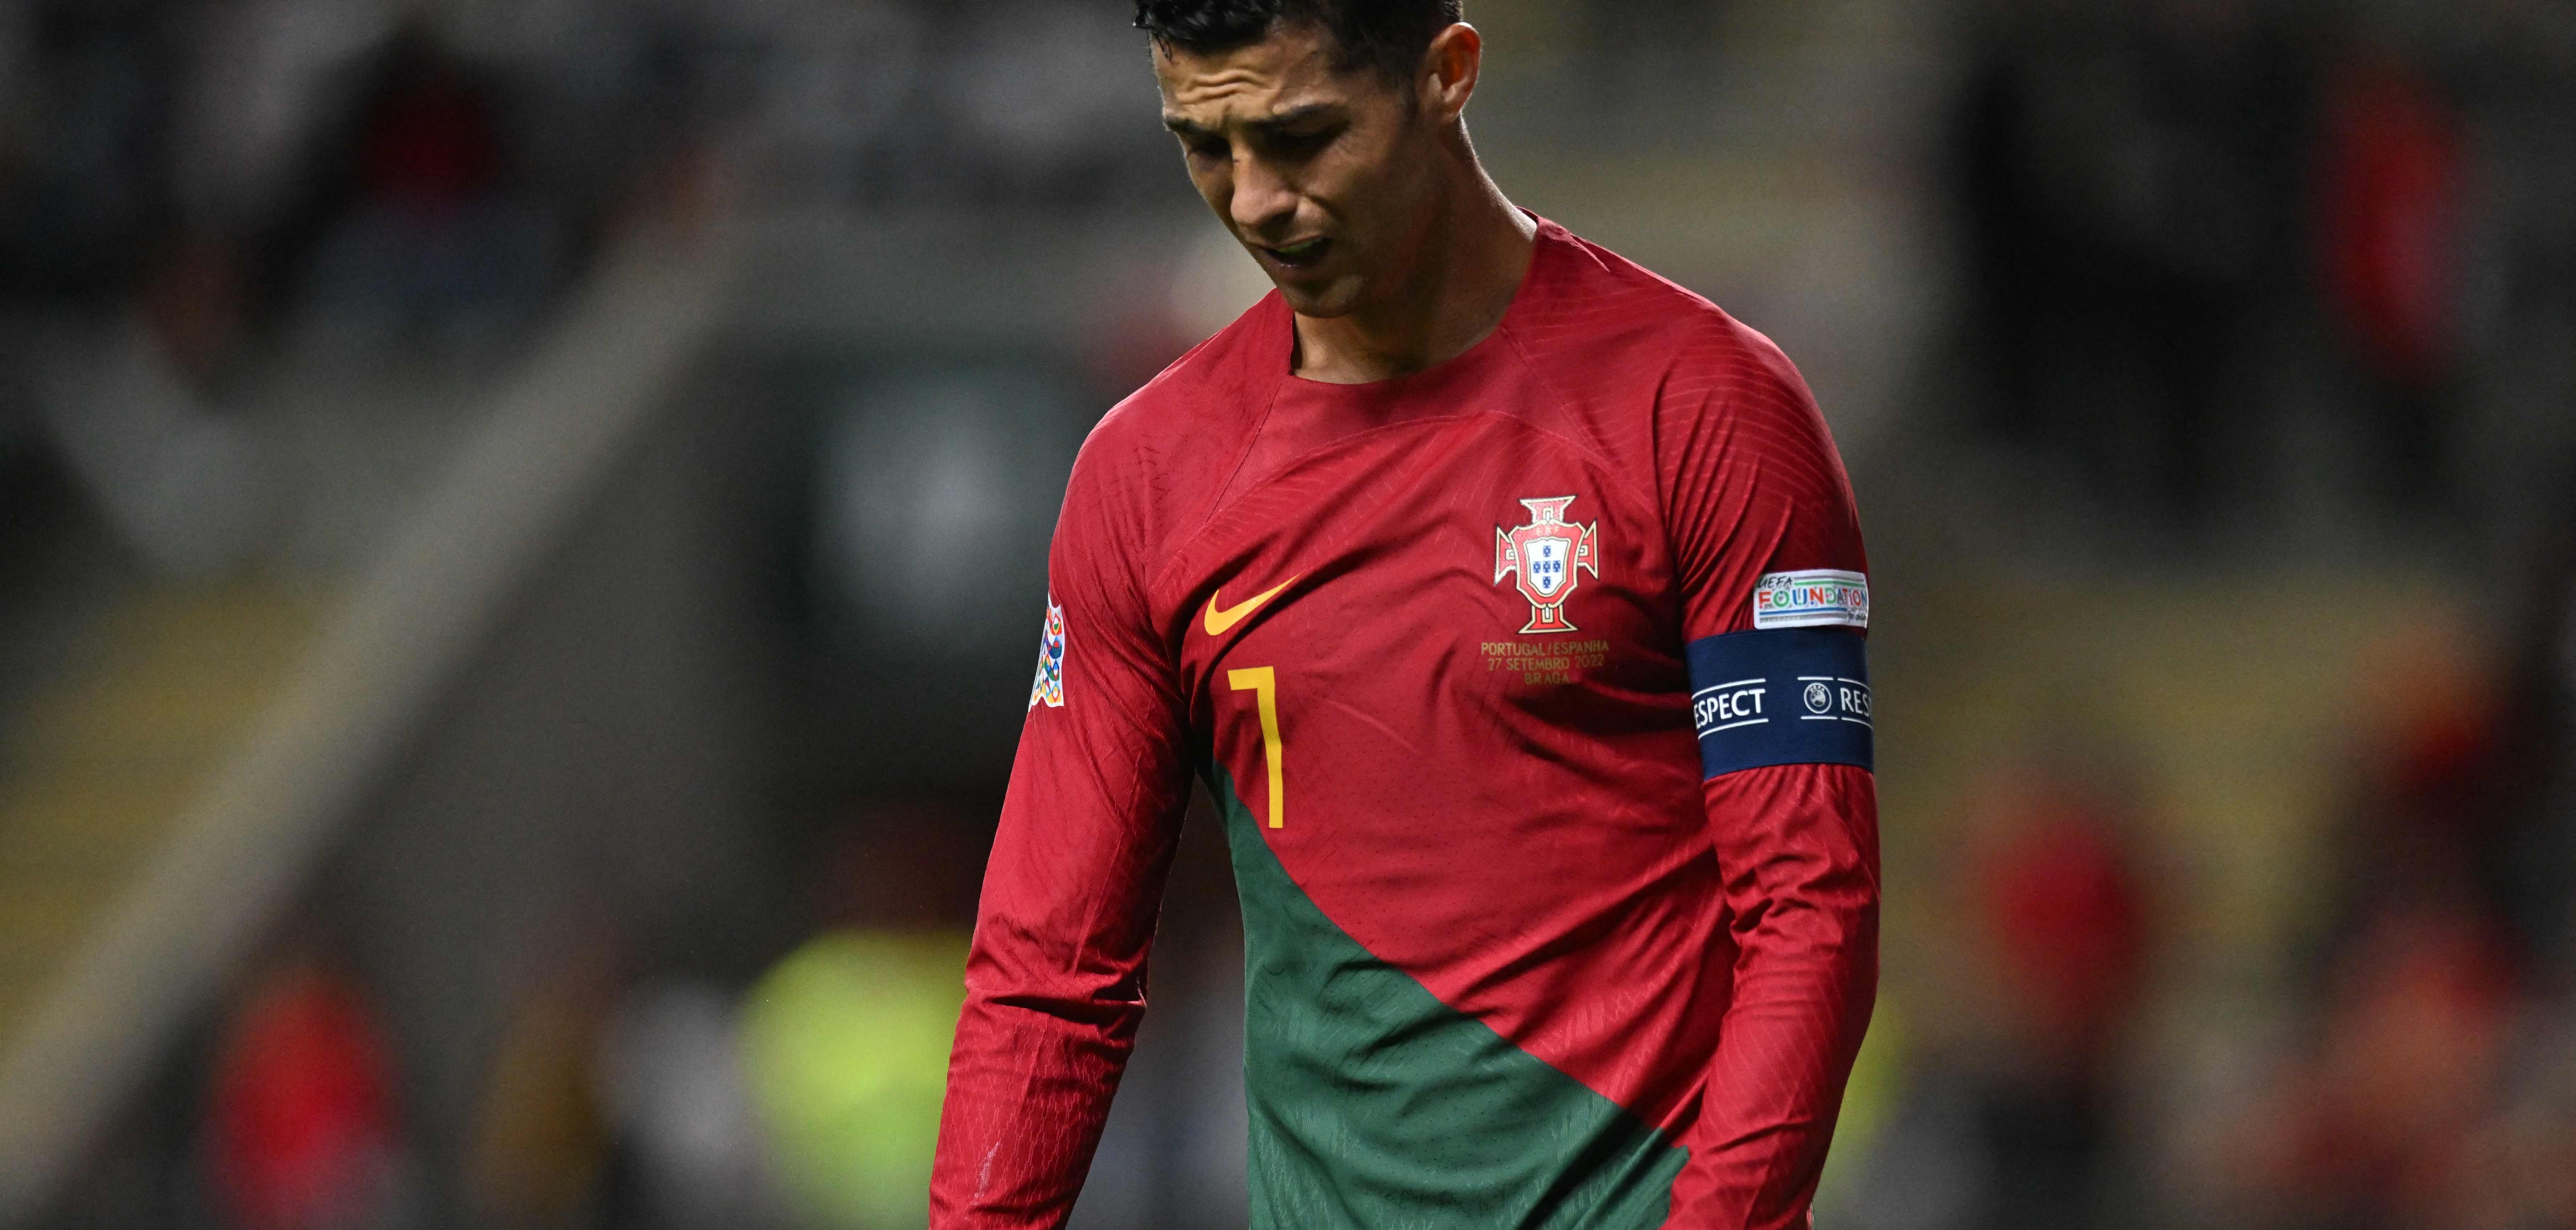 Cristiano Ronaldo está teniendo una de las peores temporadas en su carrera. (Foto Prensa Libre: AFP)